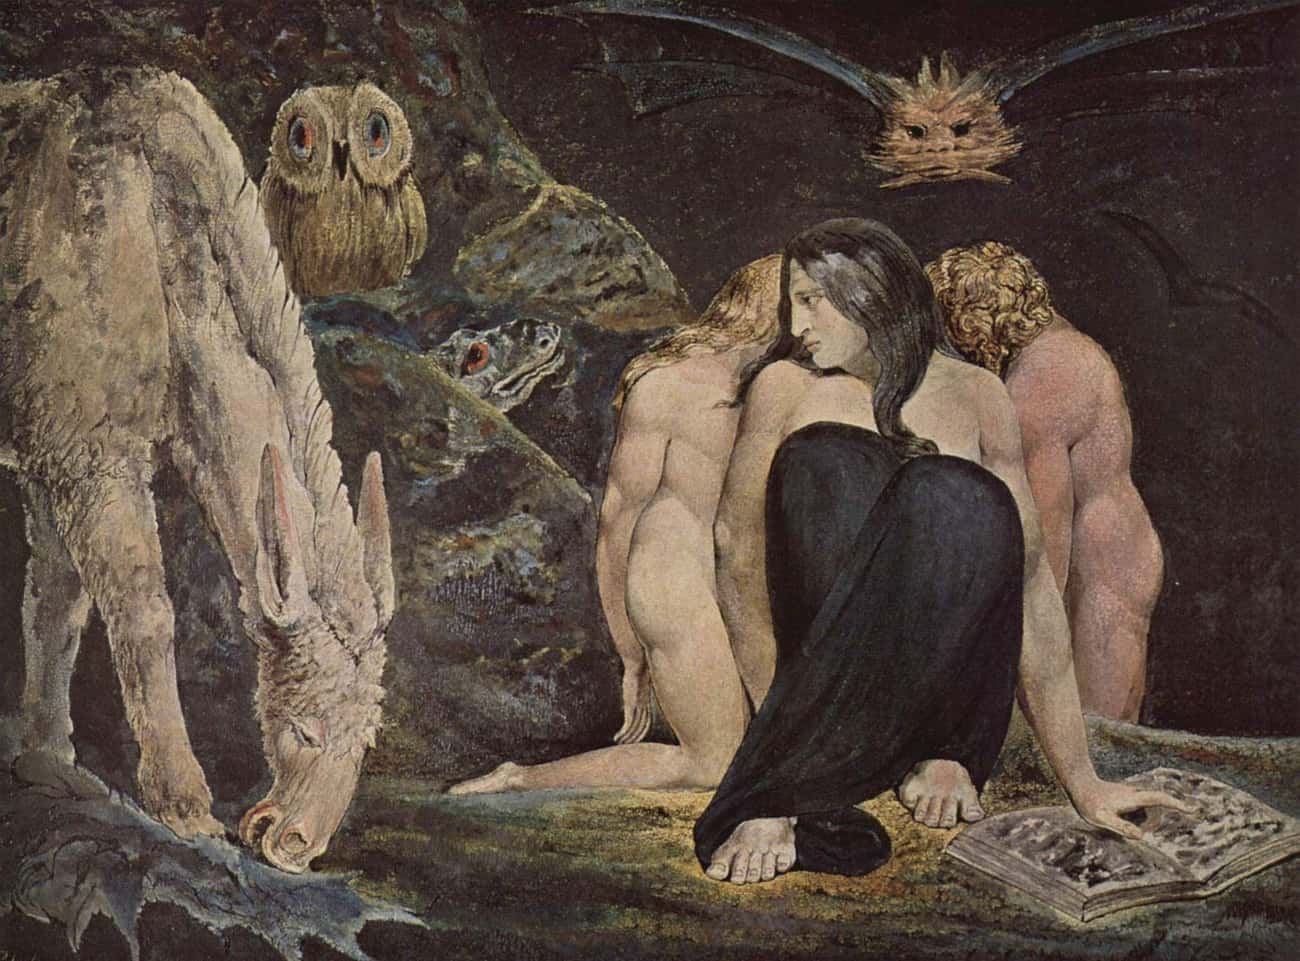 'The Night of Enitharmon's Joy' By William Blake, 1795